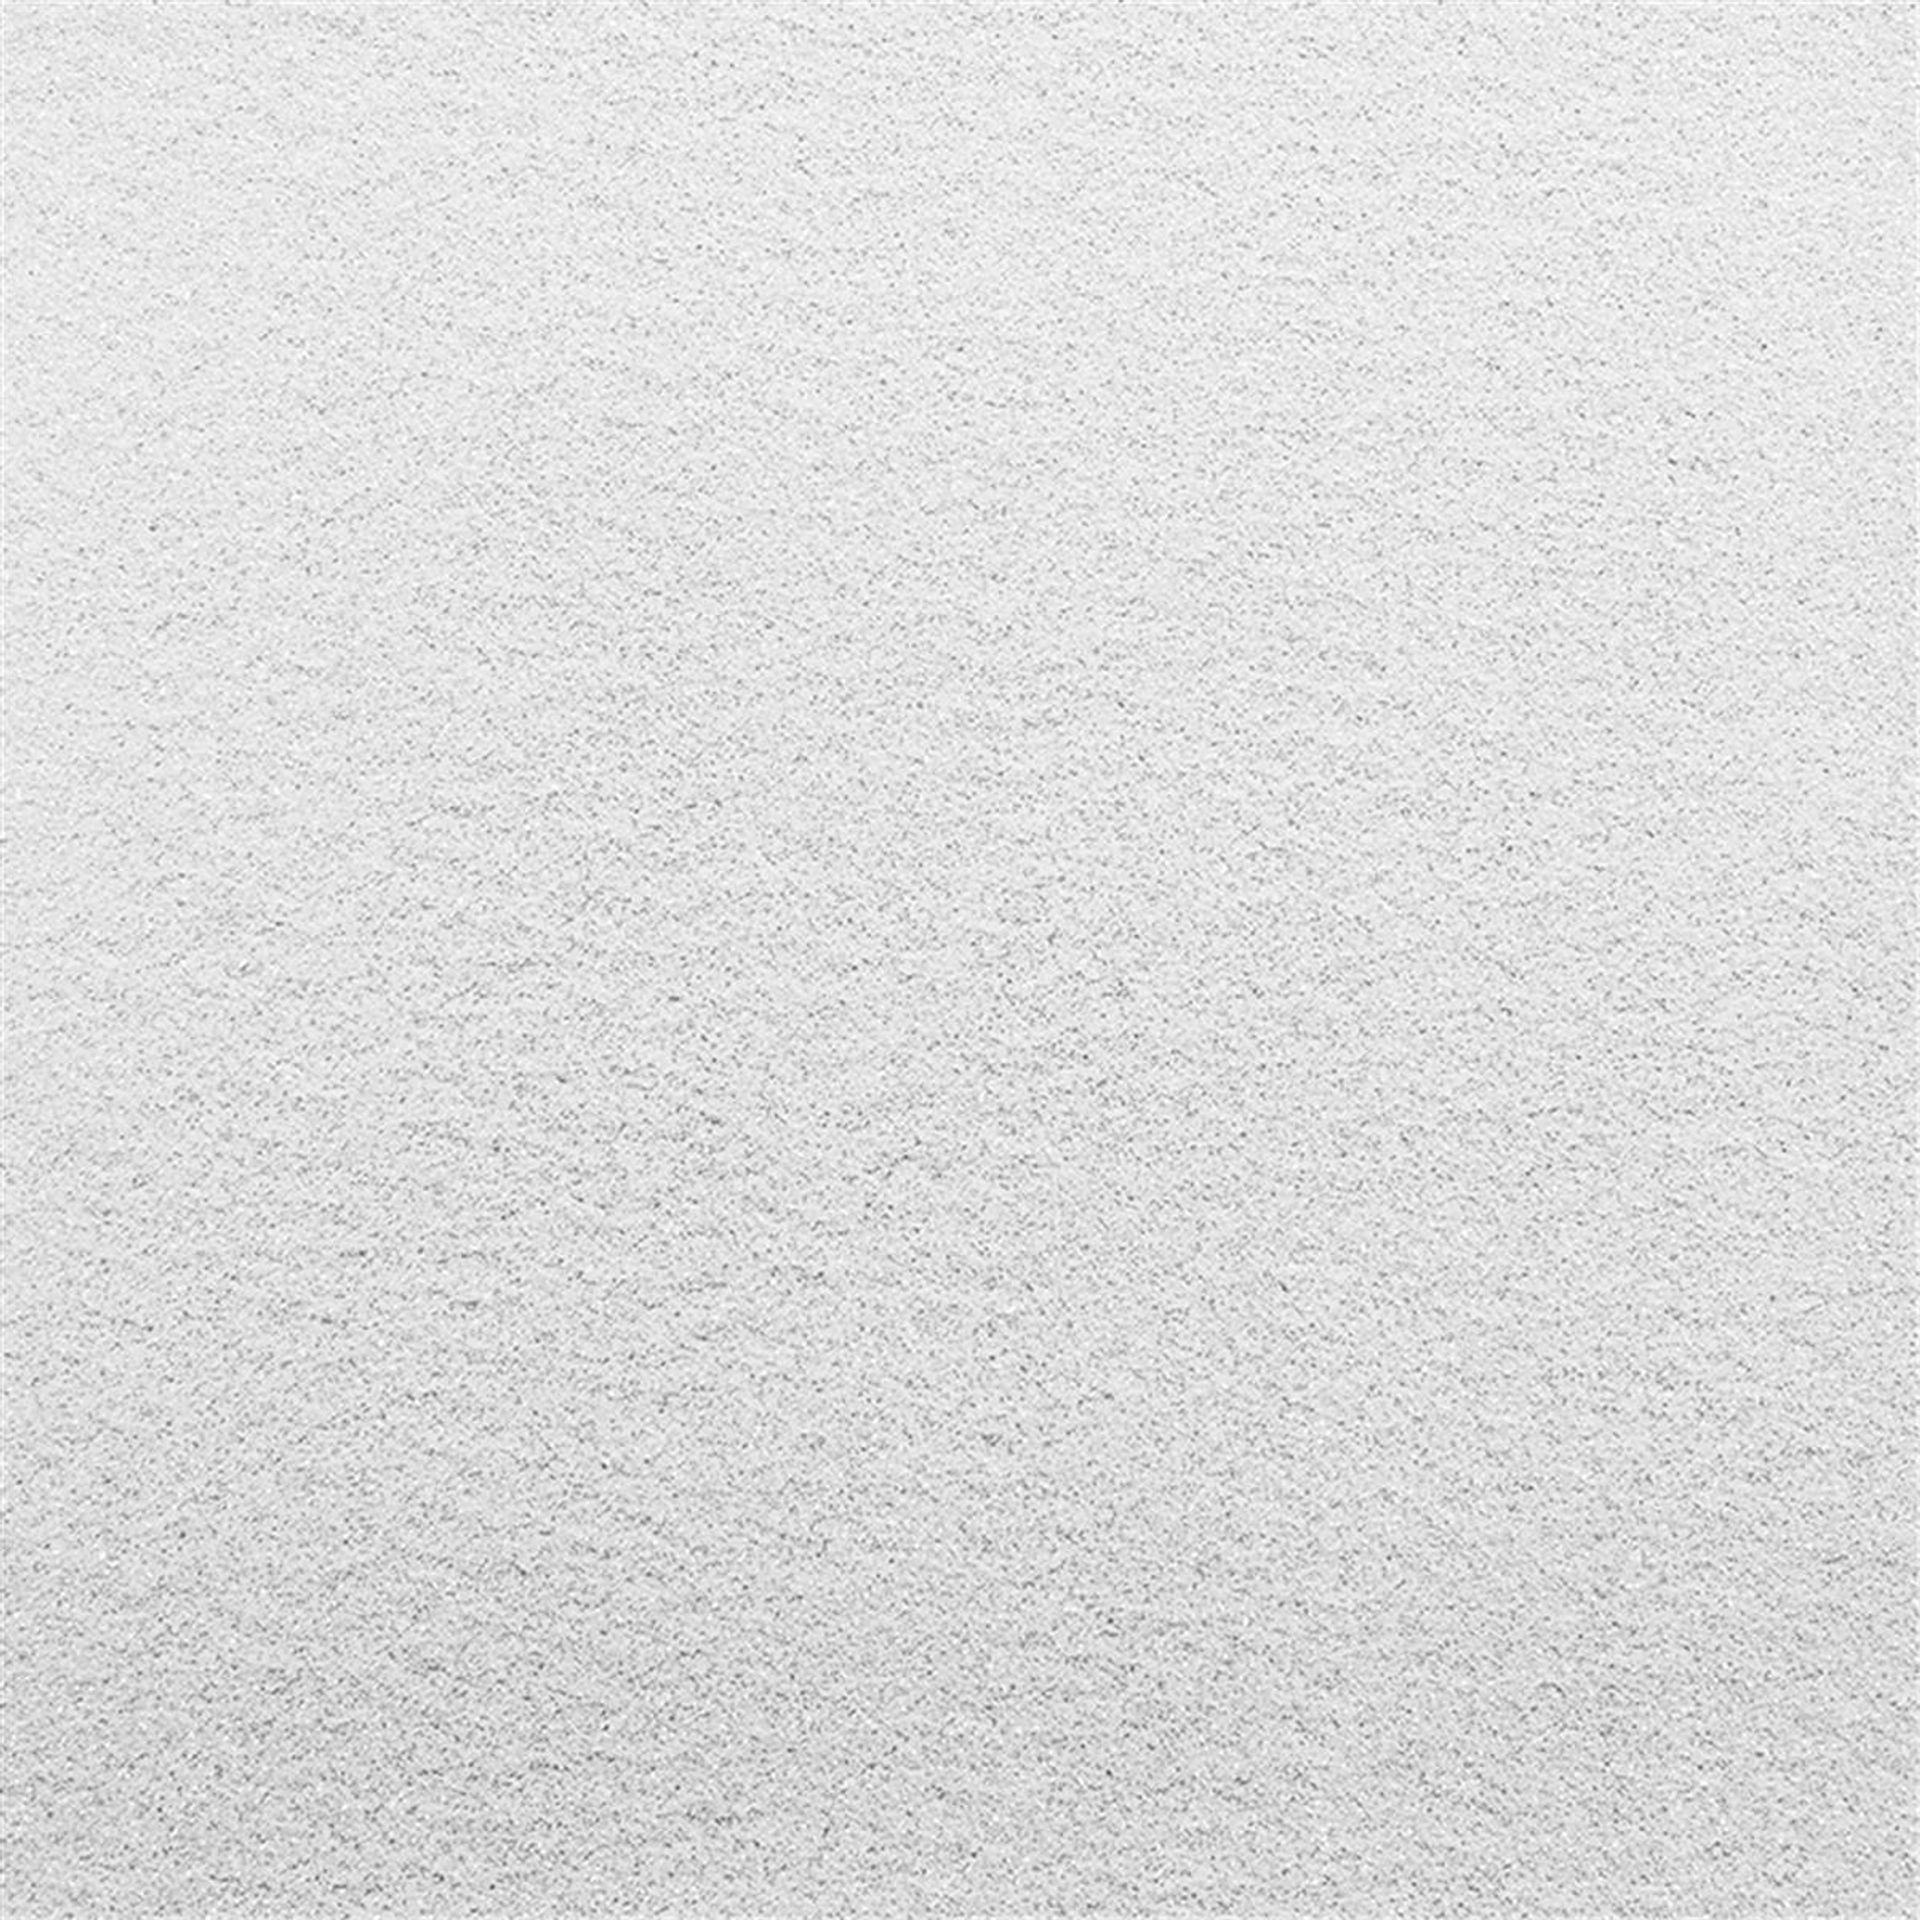 Messeboden Flacher-Nadelvlies-mit-Pailetten EXPOGLITTER White 0950 ohne Schutzfolie - Rollenbreite 200 cm